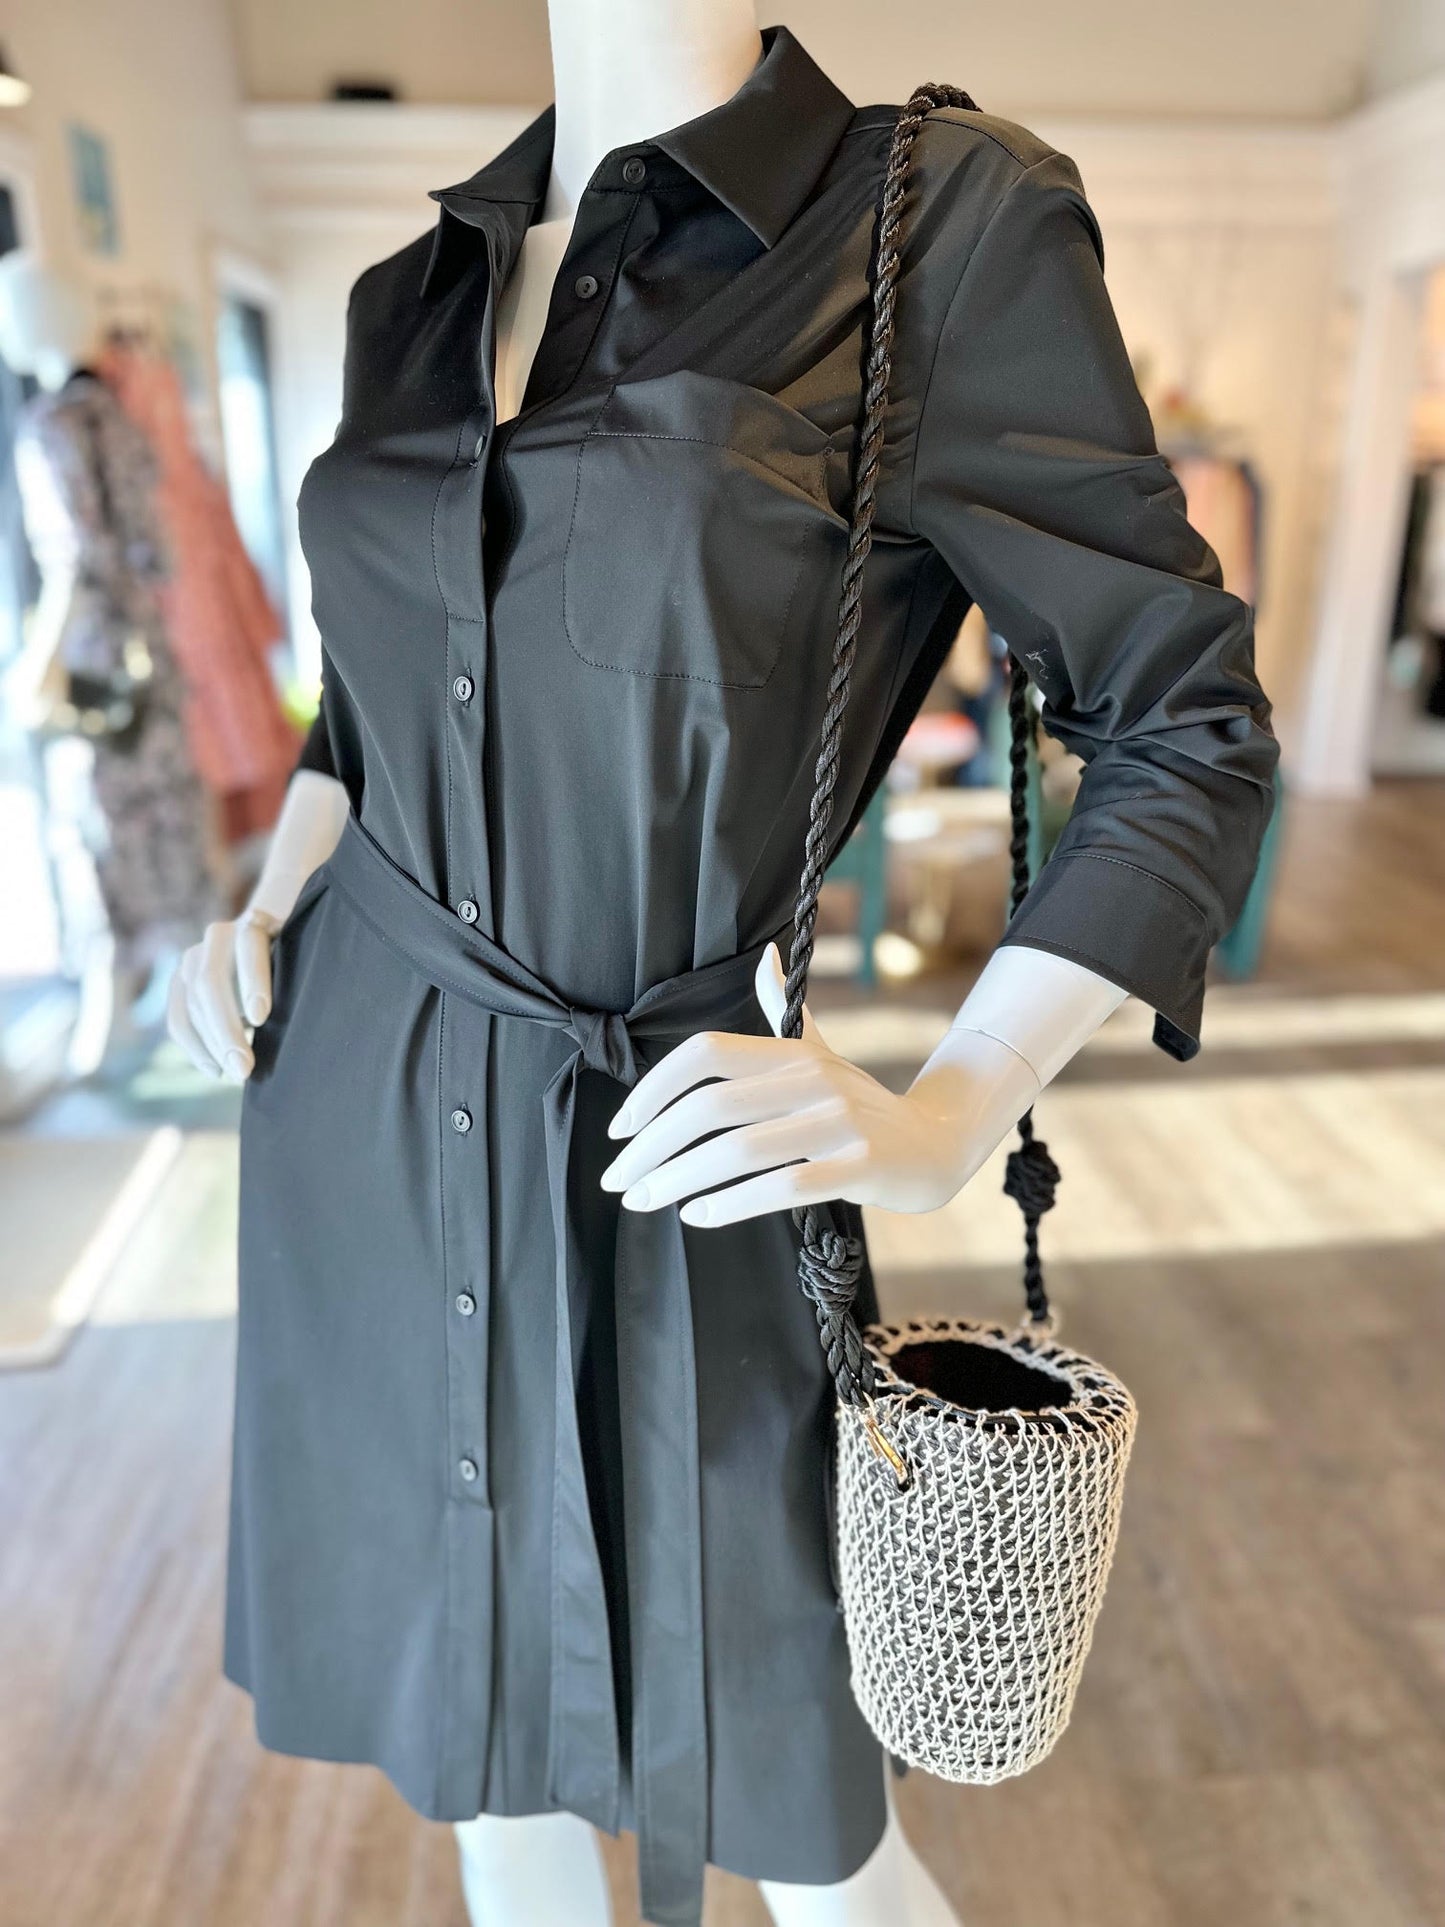 Schiffer 3/4 Sleeve Dress in black by Lysse